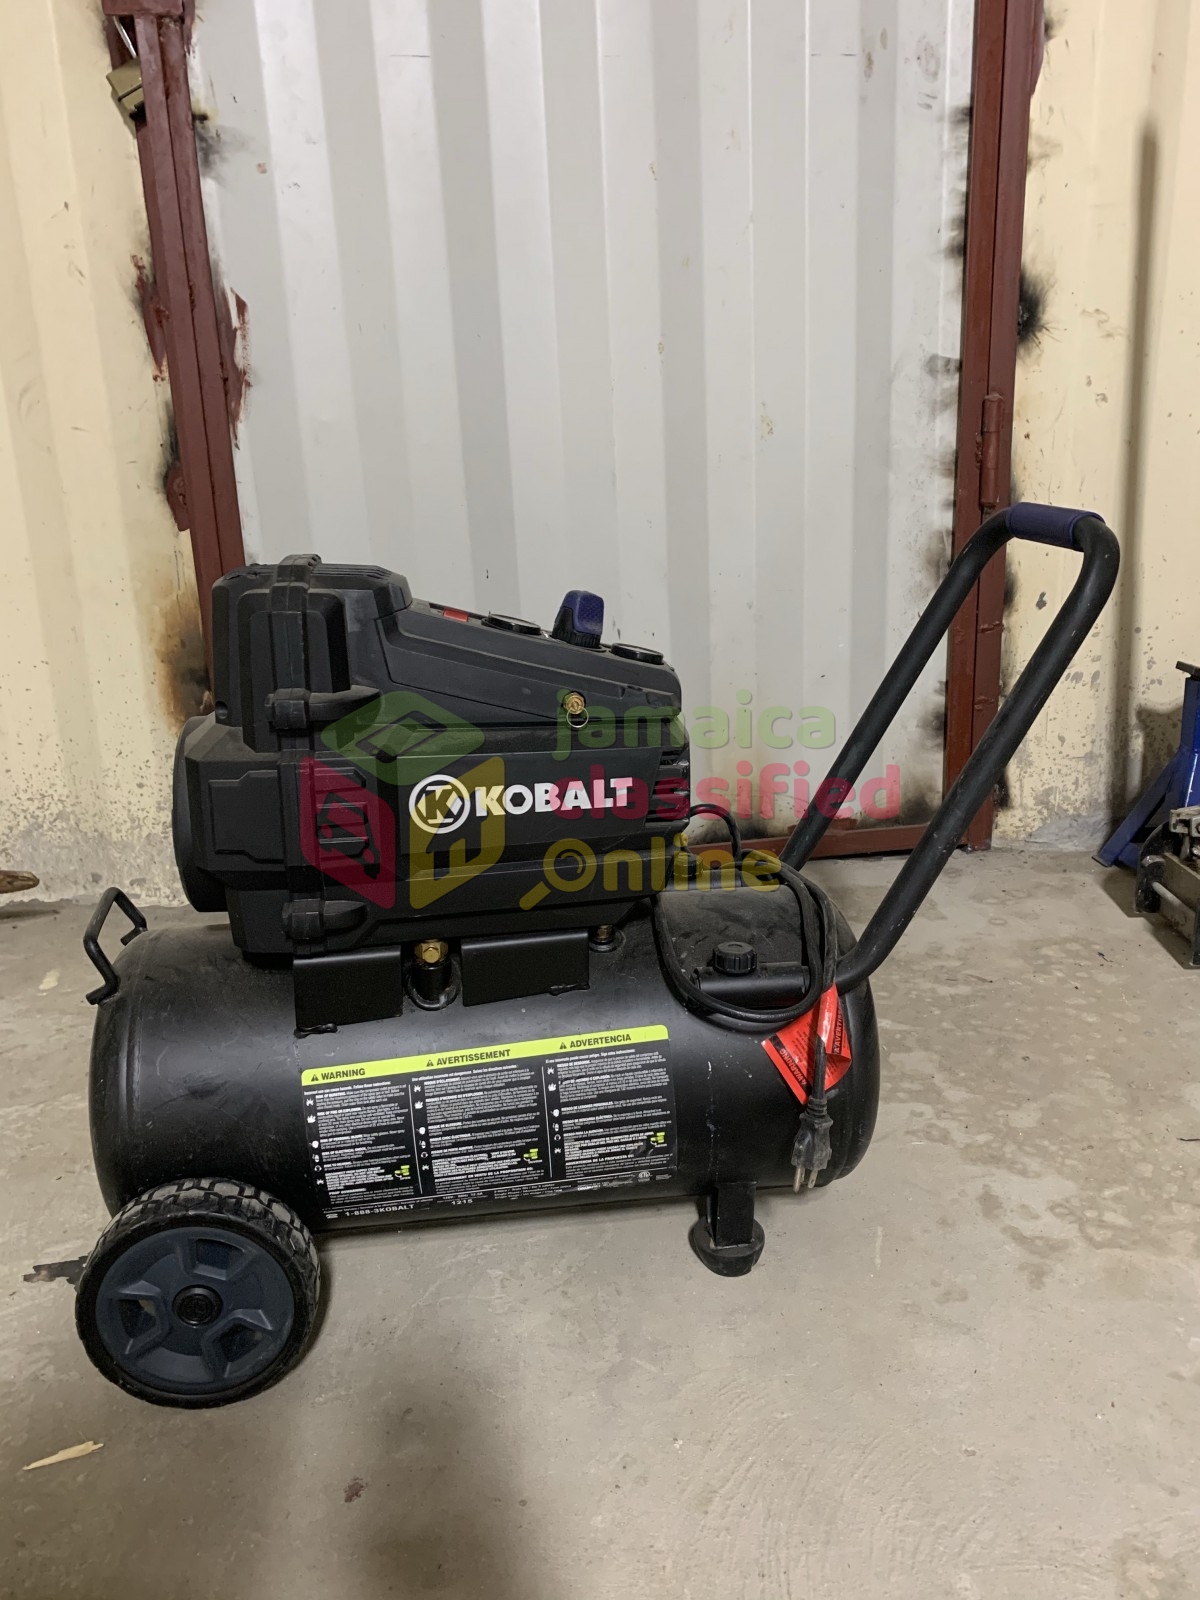 Kobalt 8 Gallon Air Compressor for sale in Goshen St Elizabeth - Tools